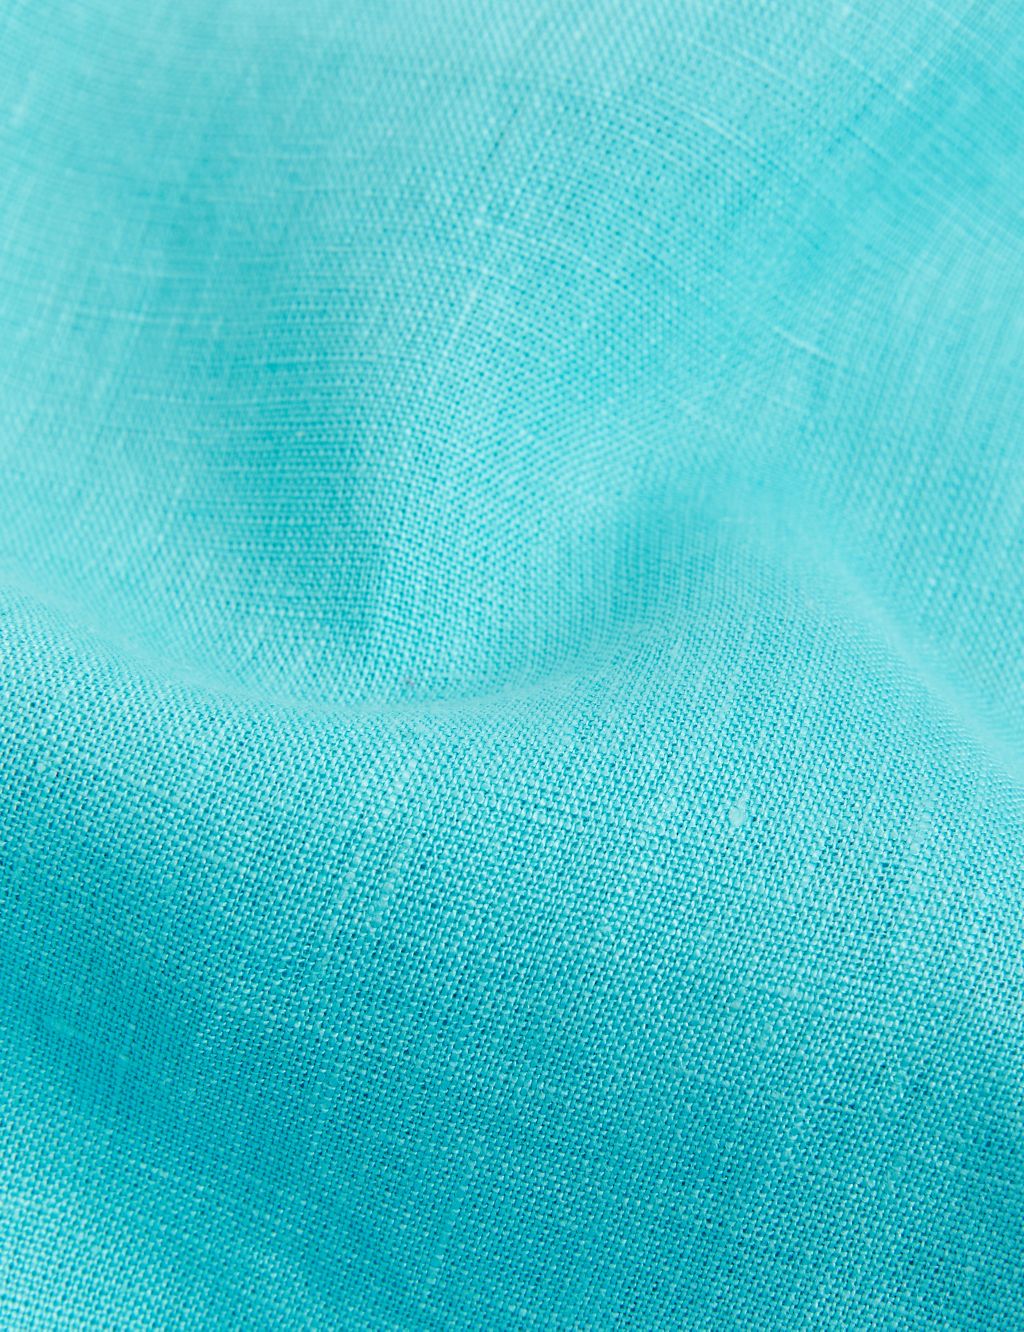 Pure Linen Lace Insert Vest Top image 5